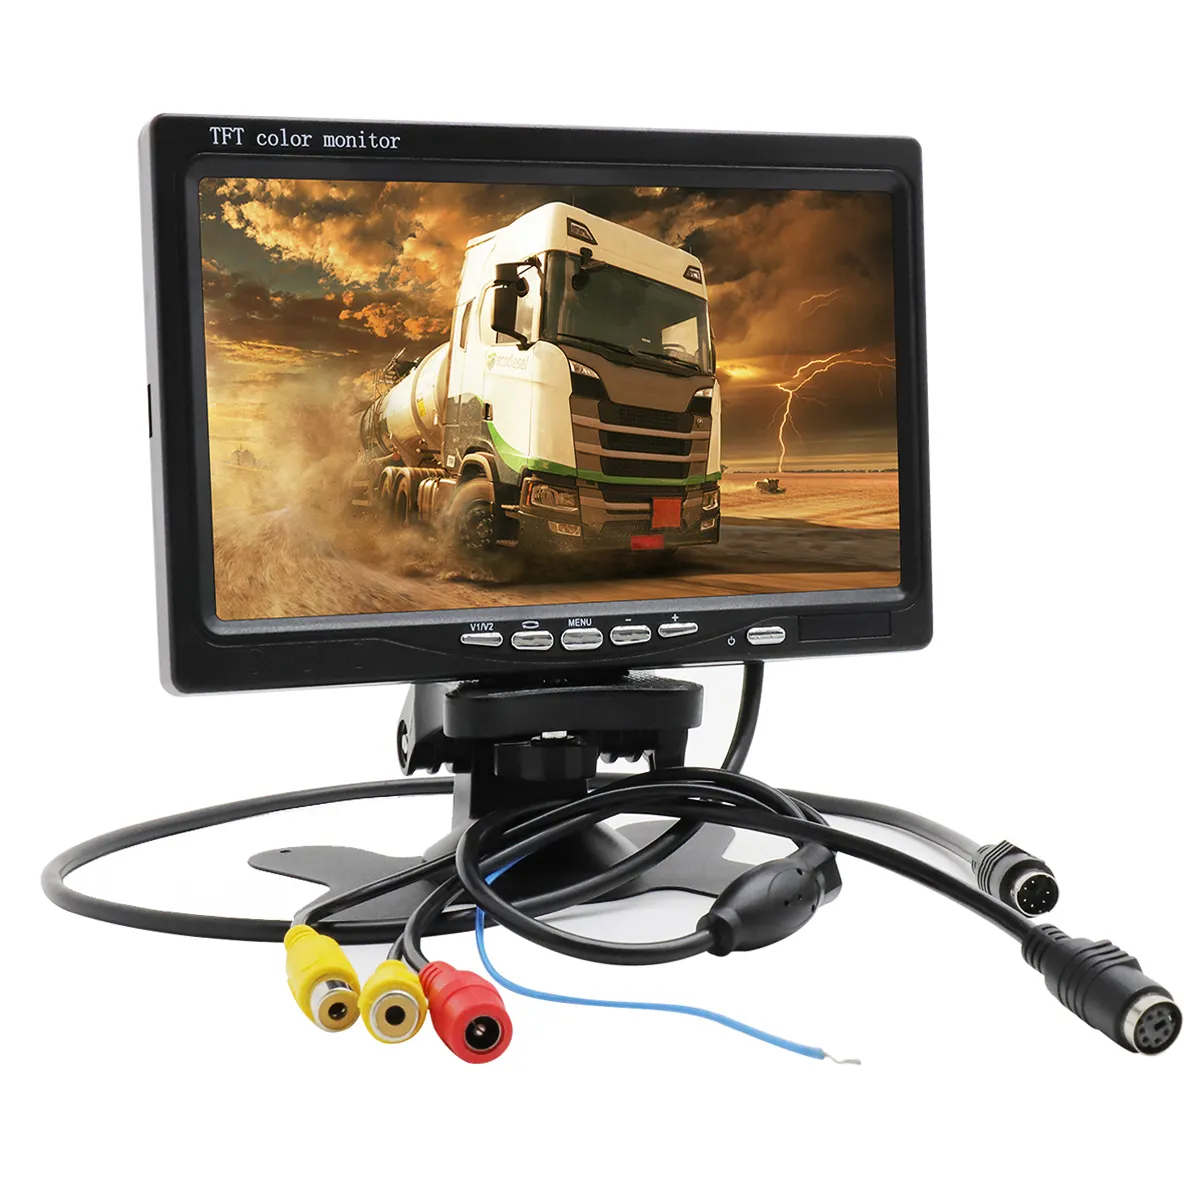 Tela TFT LCD colorida HD para carro, monitor de 7 polegadas, 12V-24V, 7 polegadas, para câmera de backup, câmera de visão traseira reversa, CCTV automática, suporte ou concha